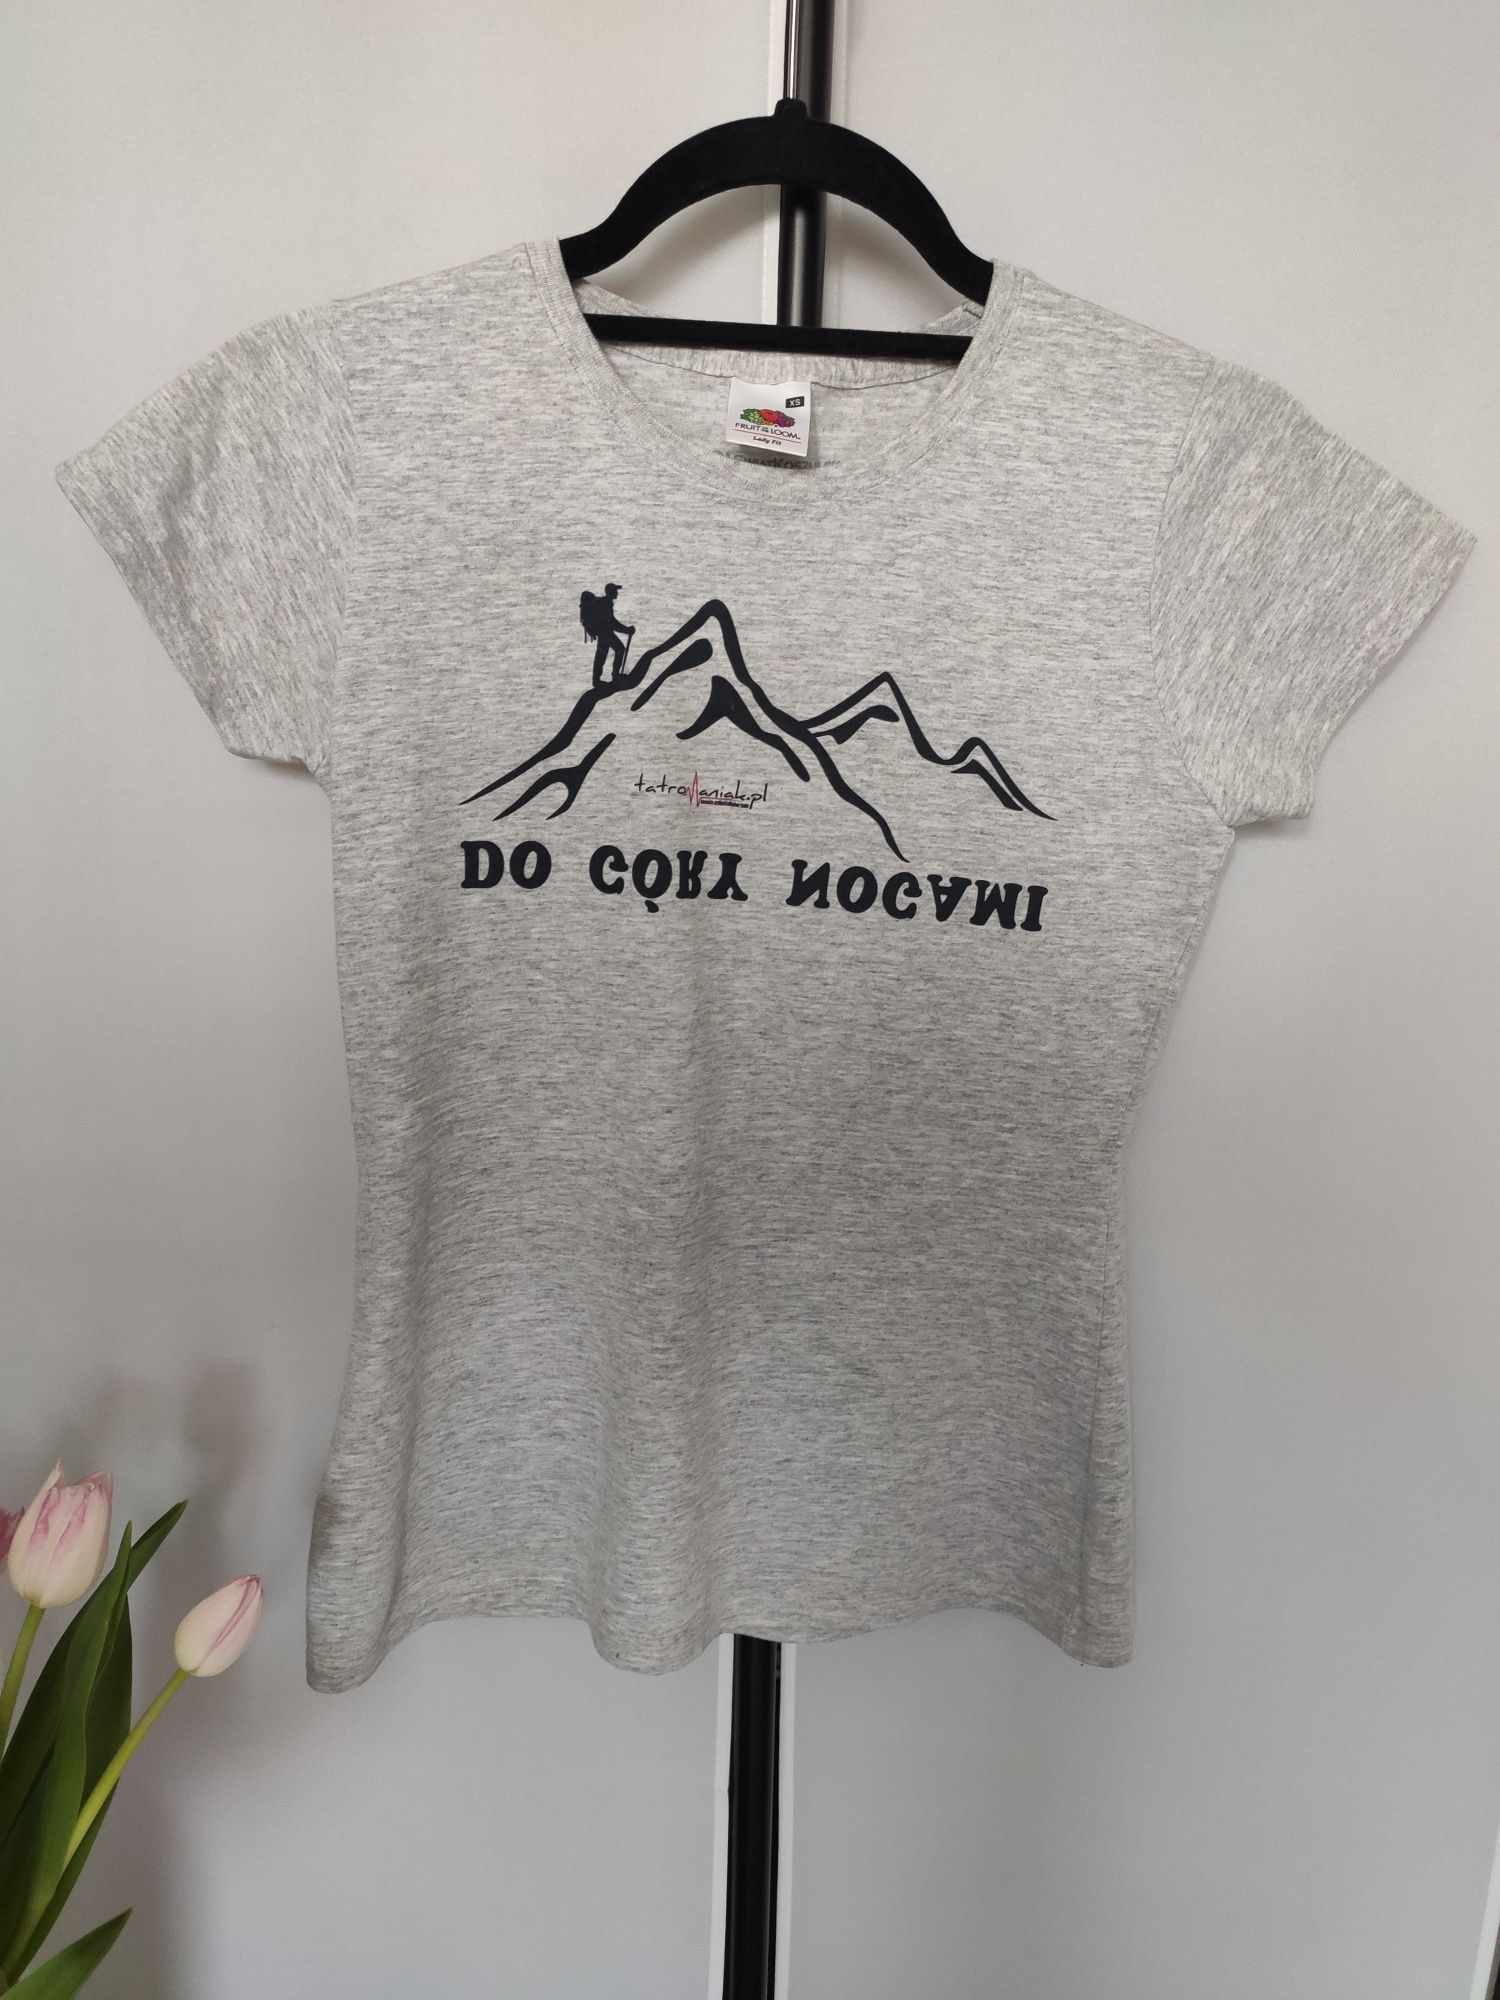 Koszulka t-shirt sportowy górski do góry nogami tatromaniak